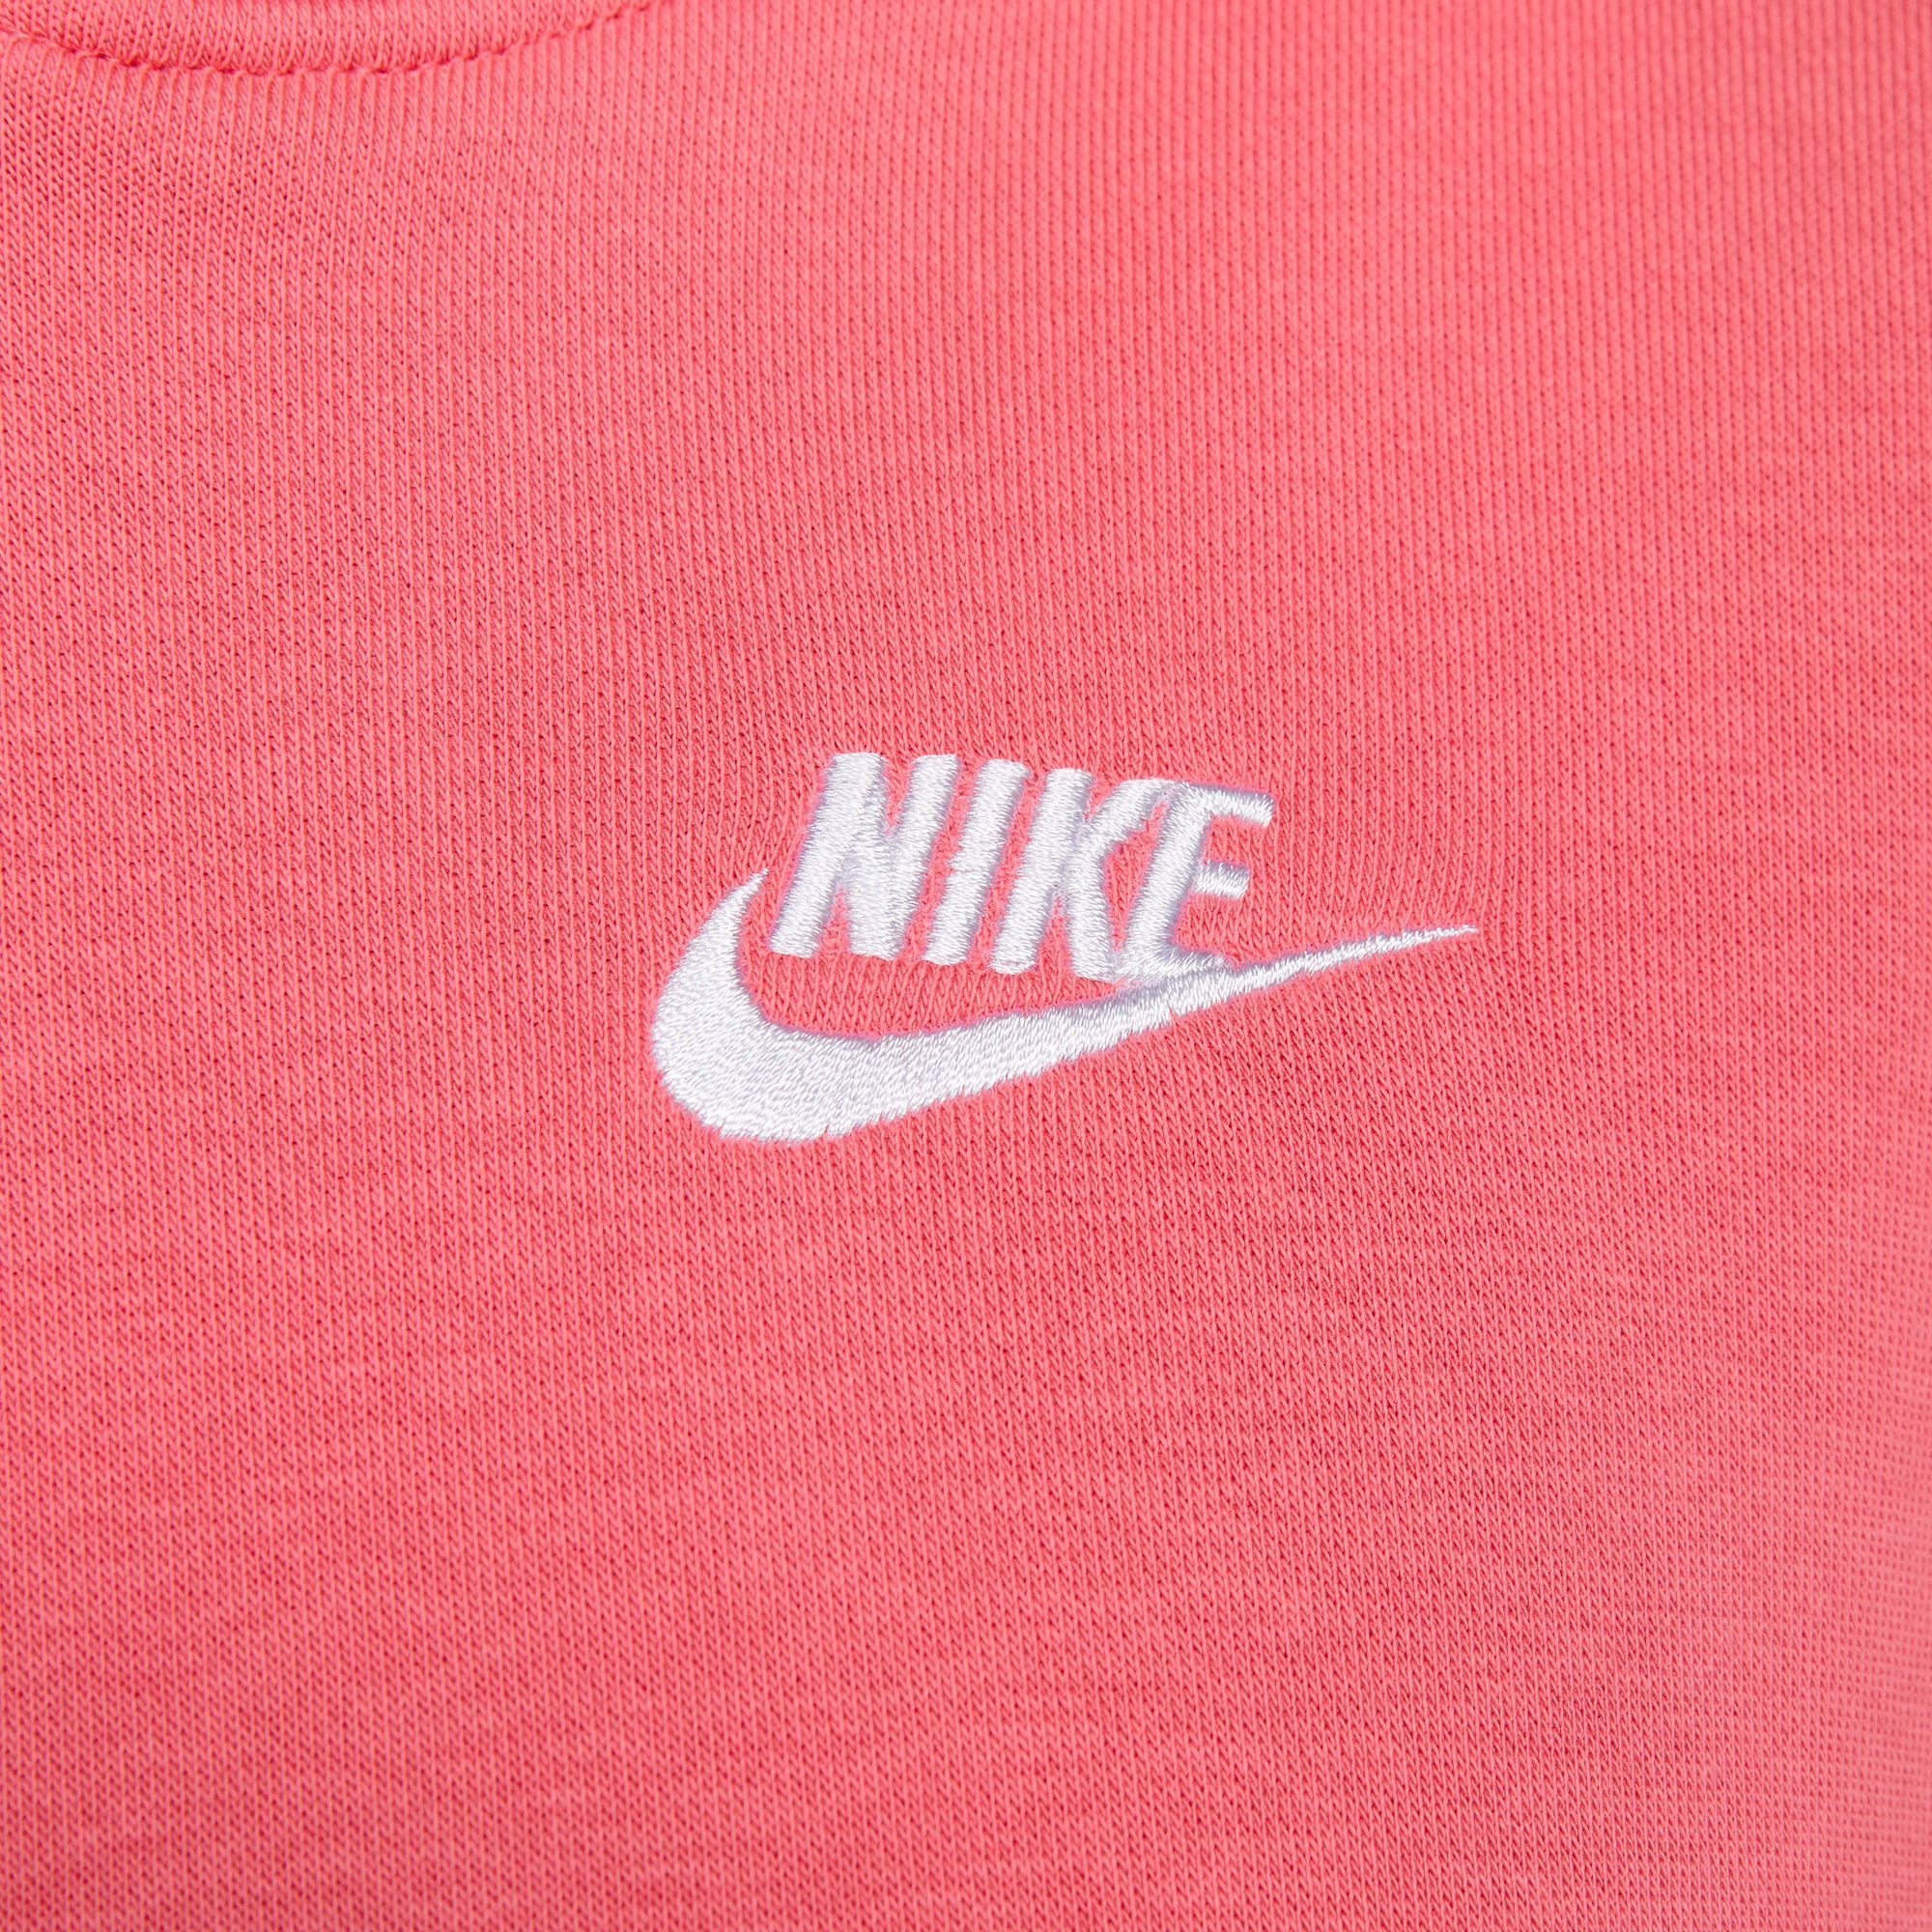 CLUB Sportswear PULLOVER WOMEN'S FLEECE Kapuzensweatshirt HOODIE orange Nike